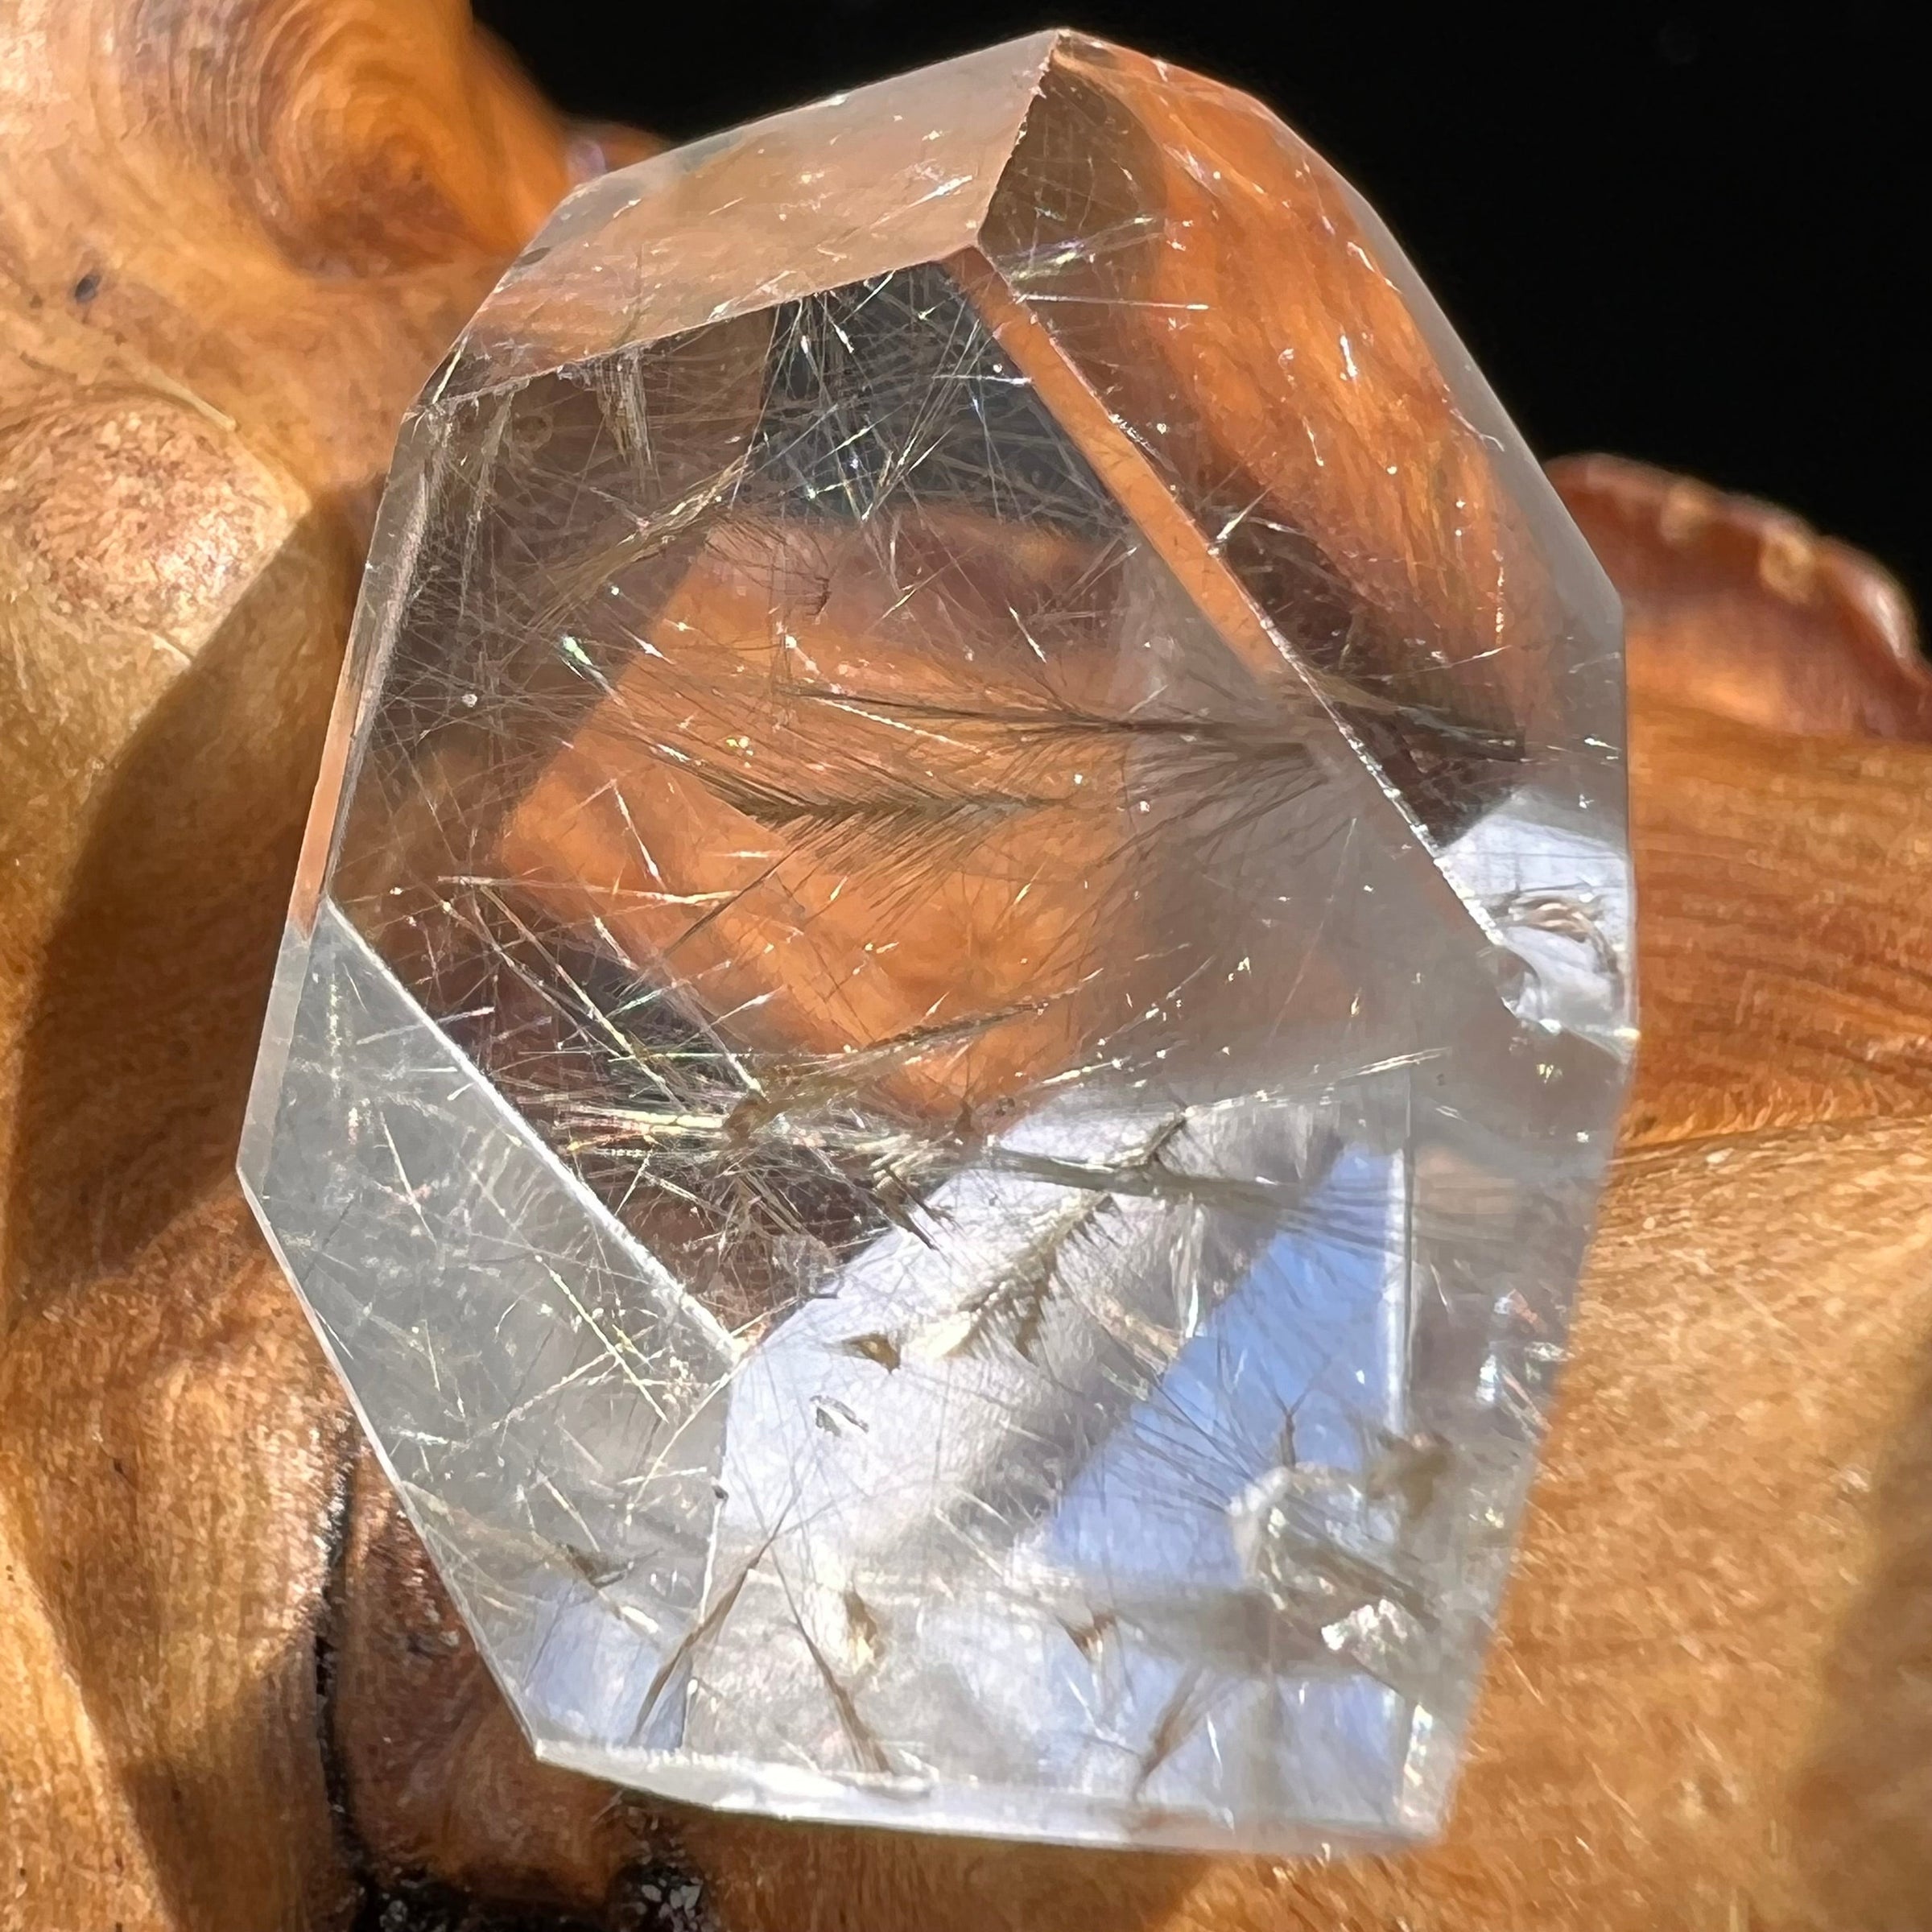 Brookite in Quartz Crystal #272-Moldavite Life